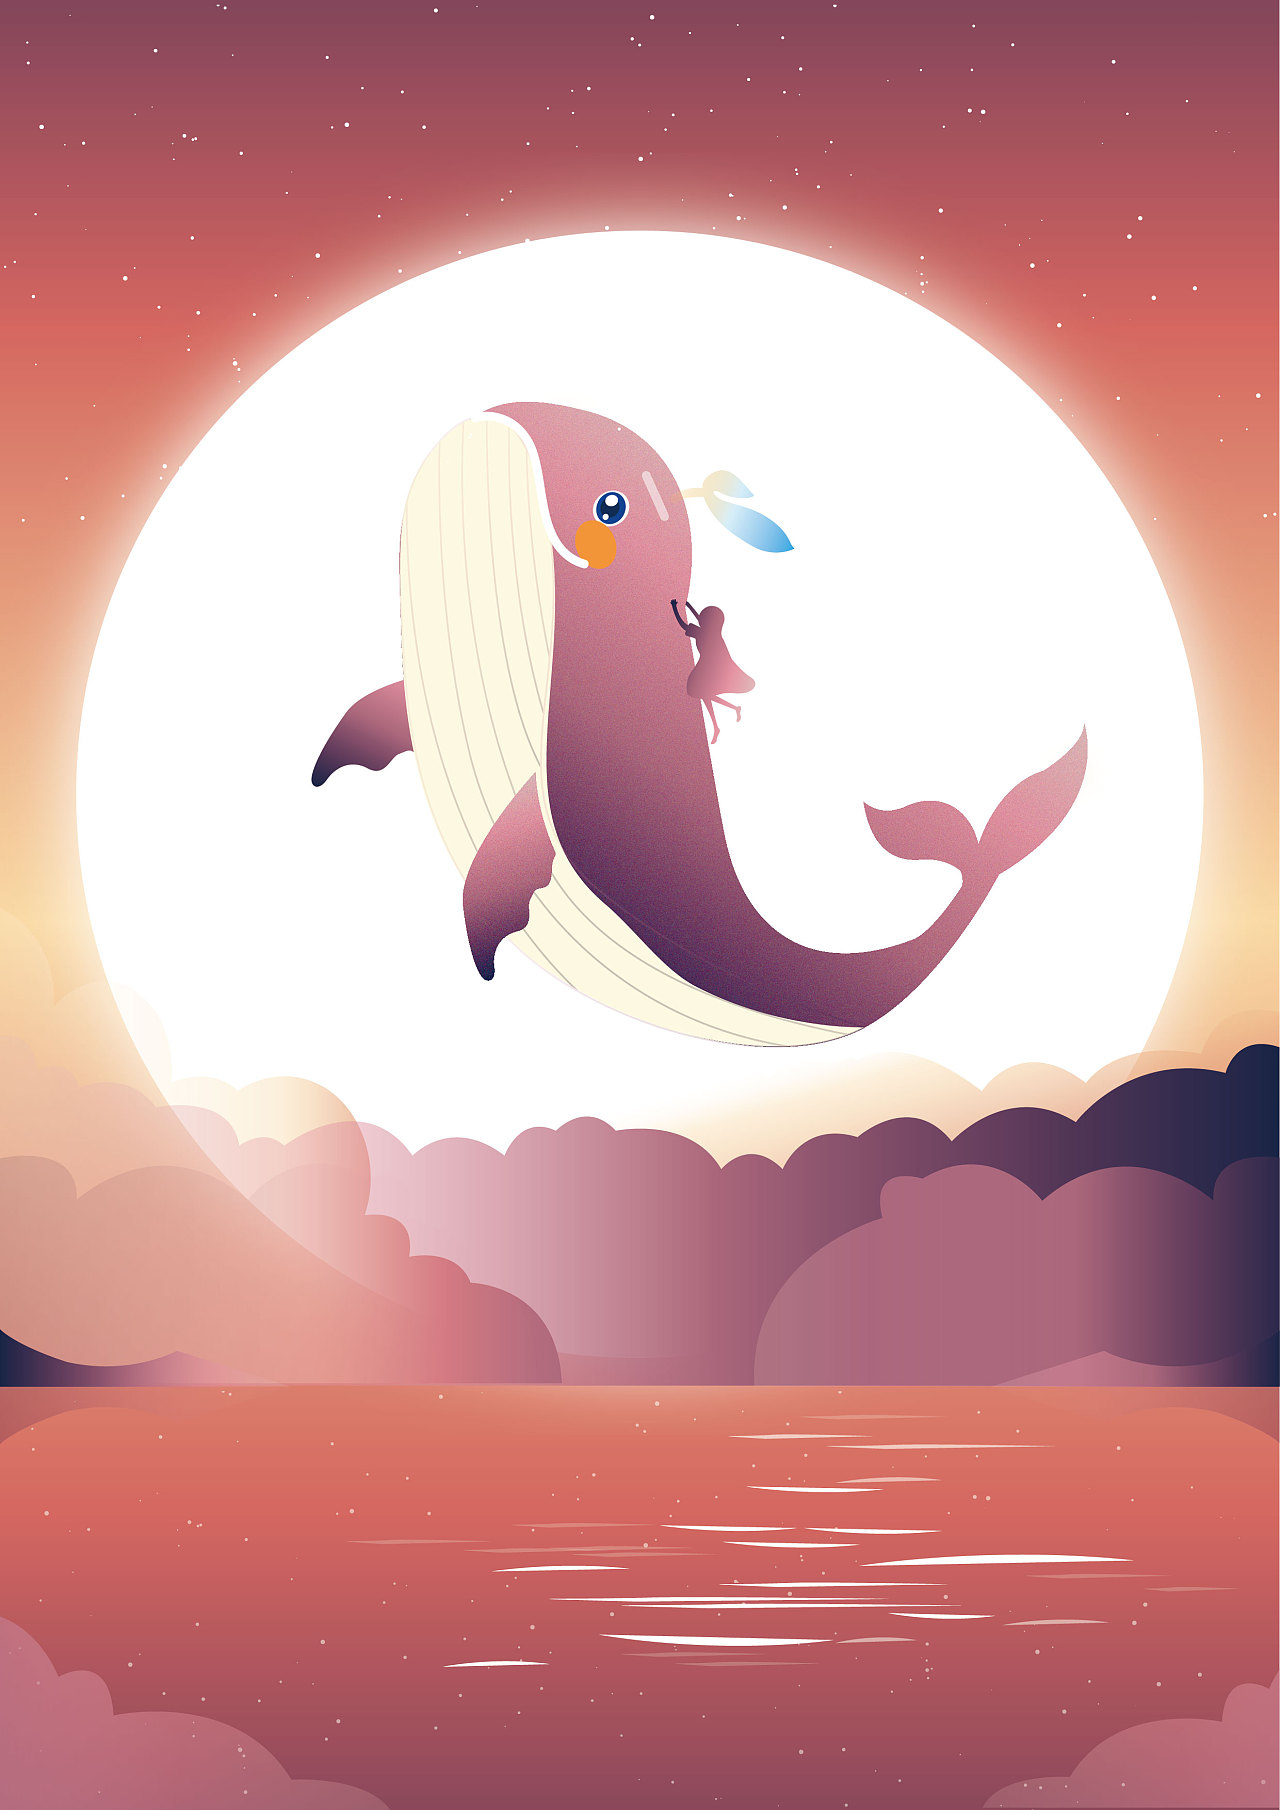 Q版鲸鱼 梦幻图片